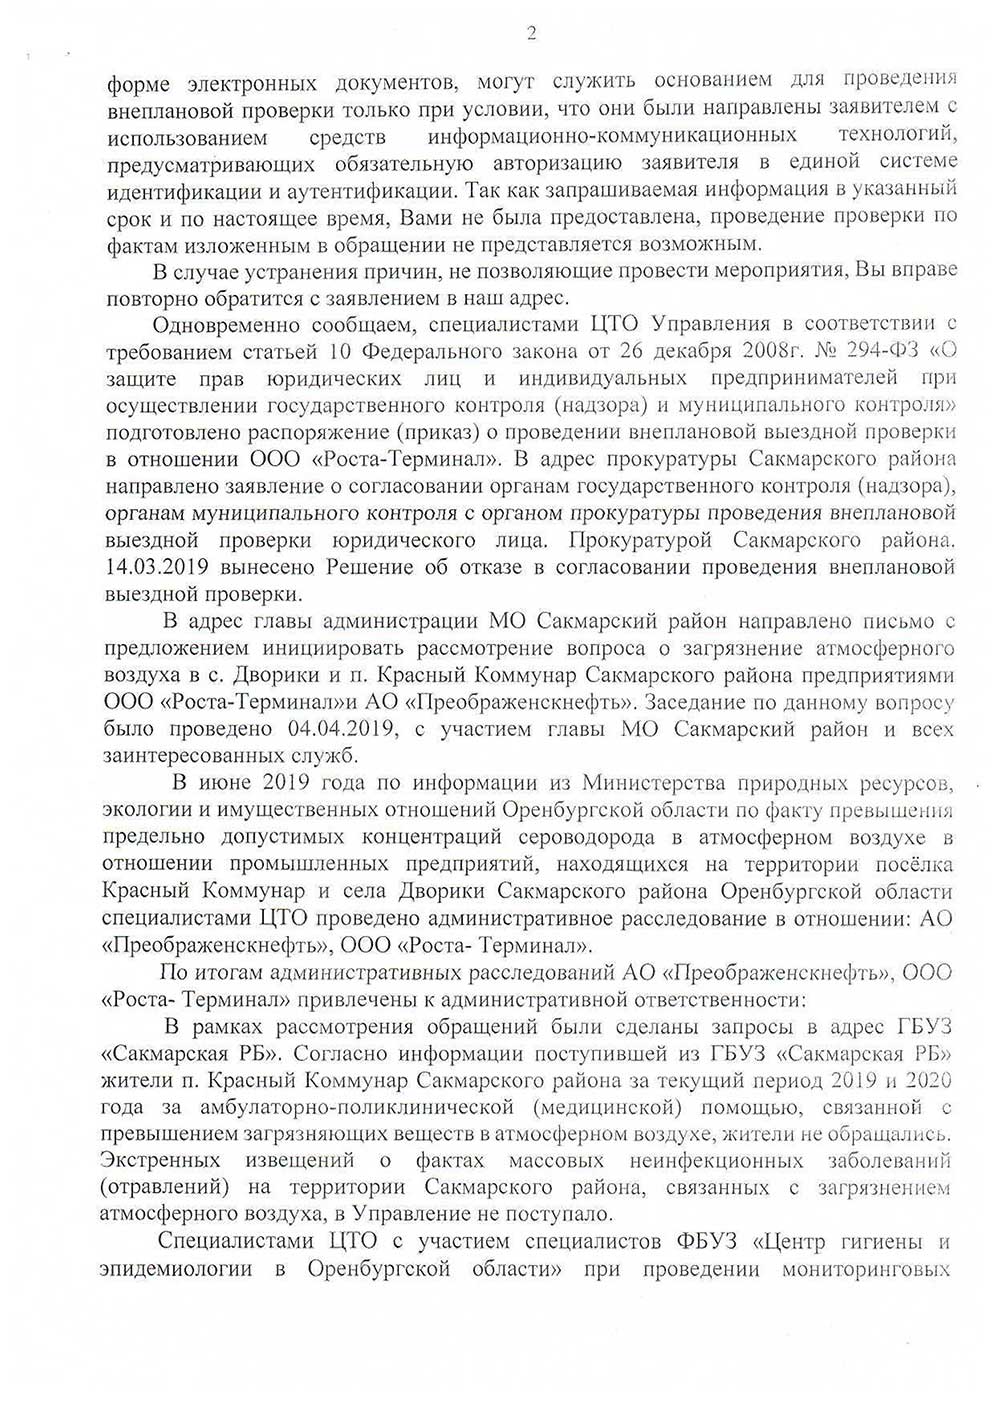 Ответ Роспотребнадзора на обращение Белых Л.И. 14.01.2020